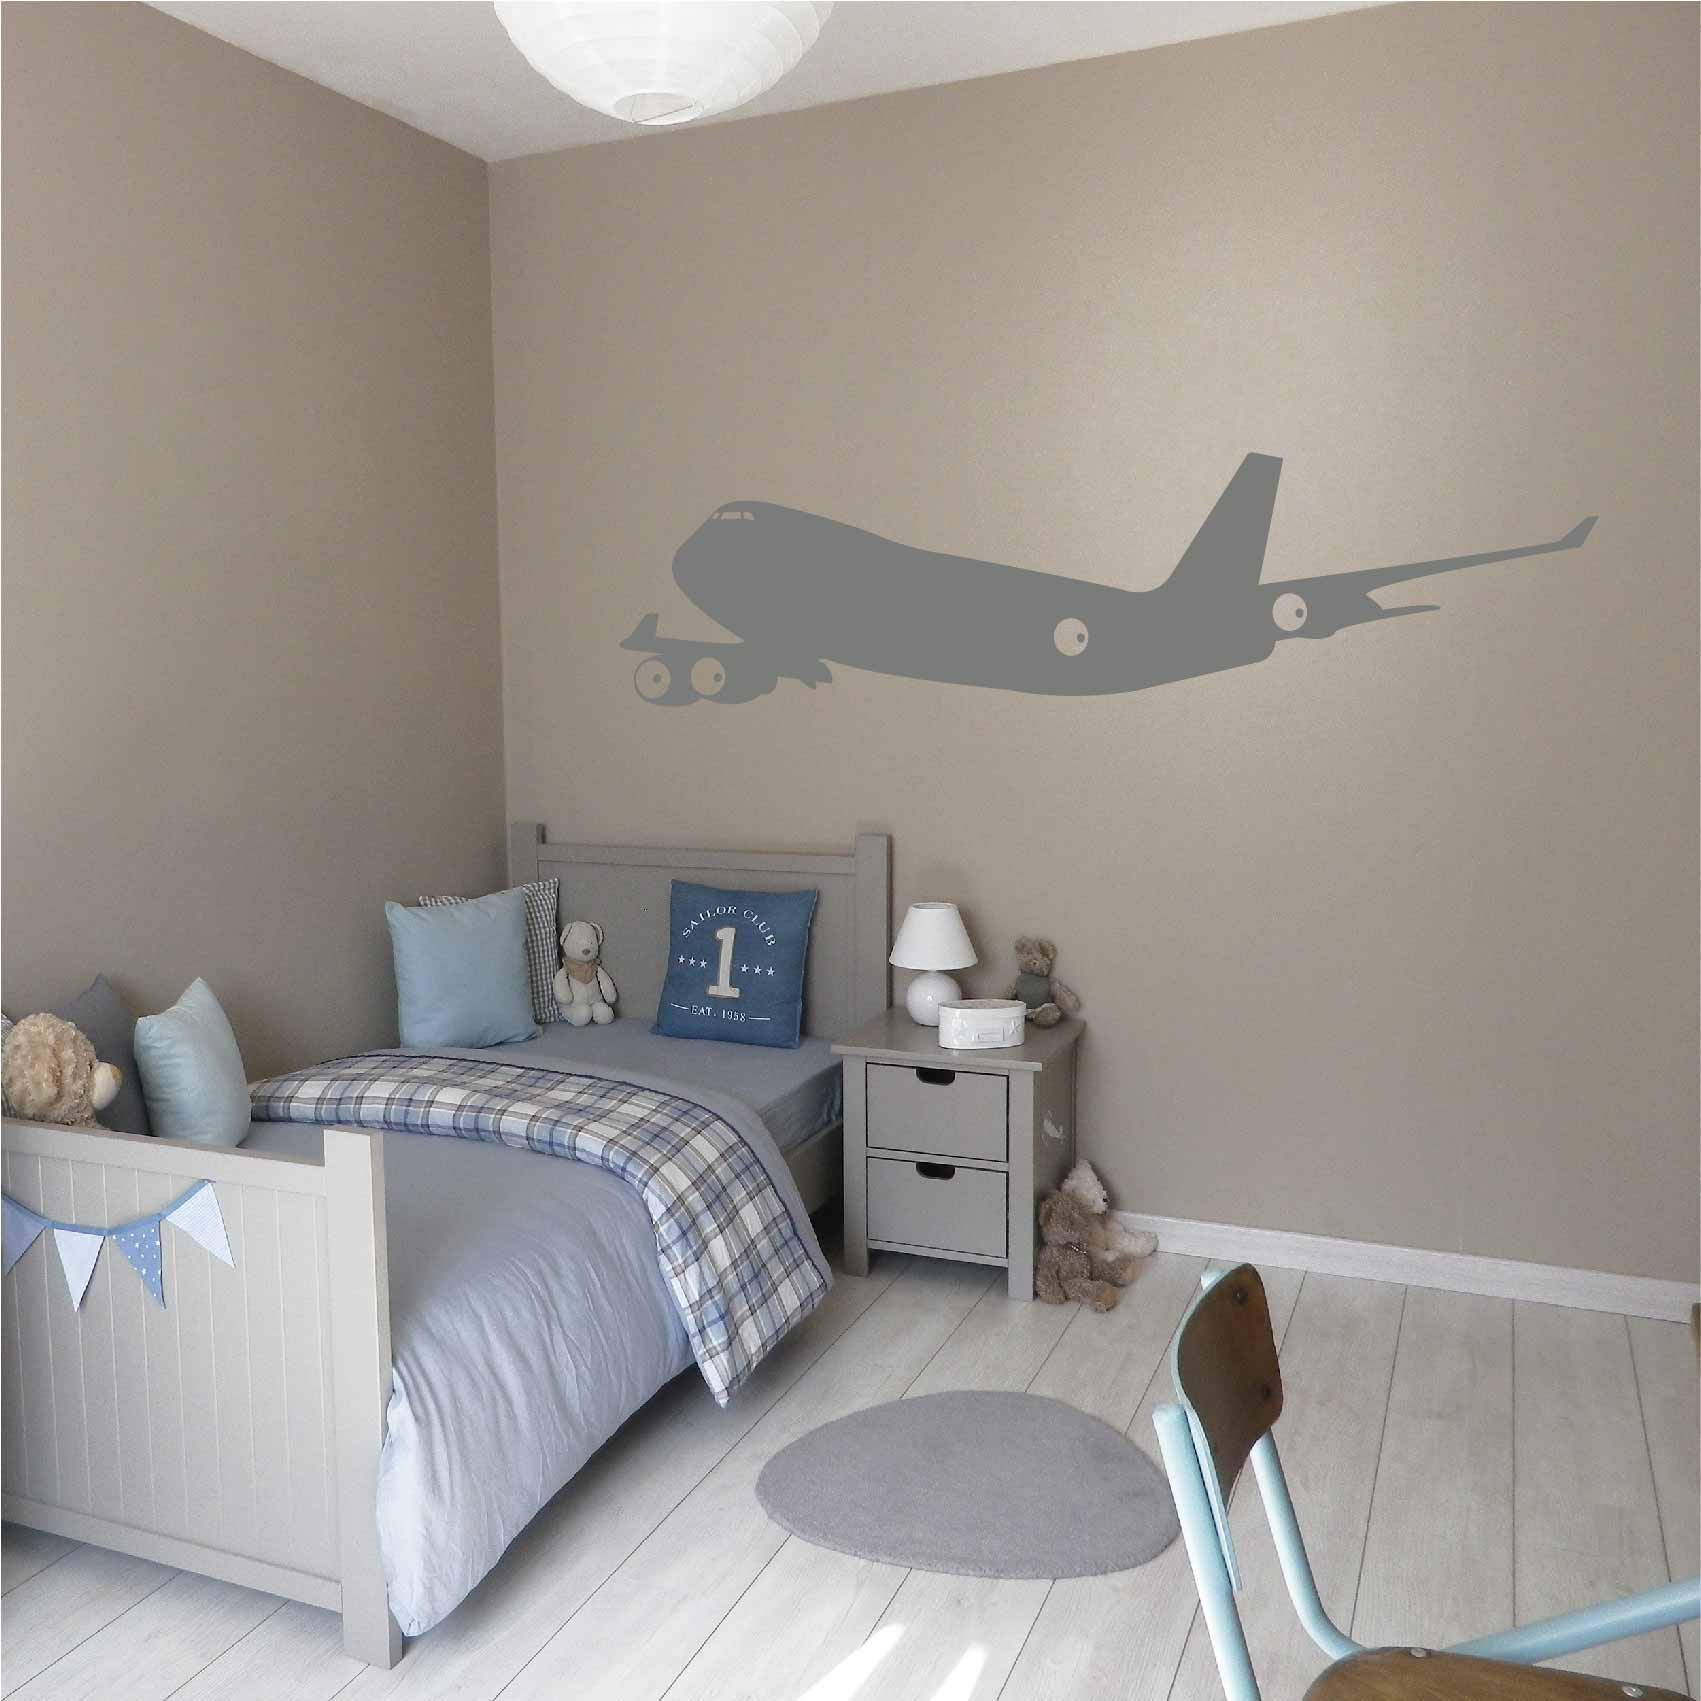 stickers-avion-ref2avion-autocollant-muraux-avions-sticker-chambre-enfant-aviation-deco-décoration-aerien